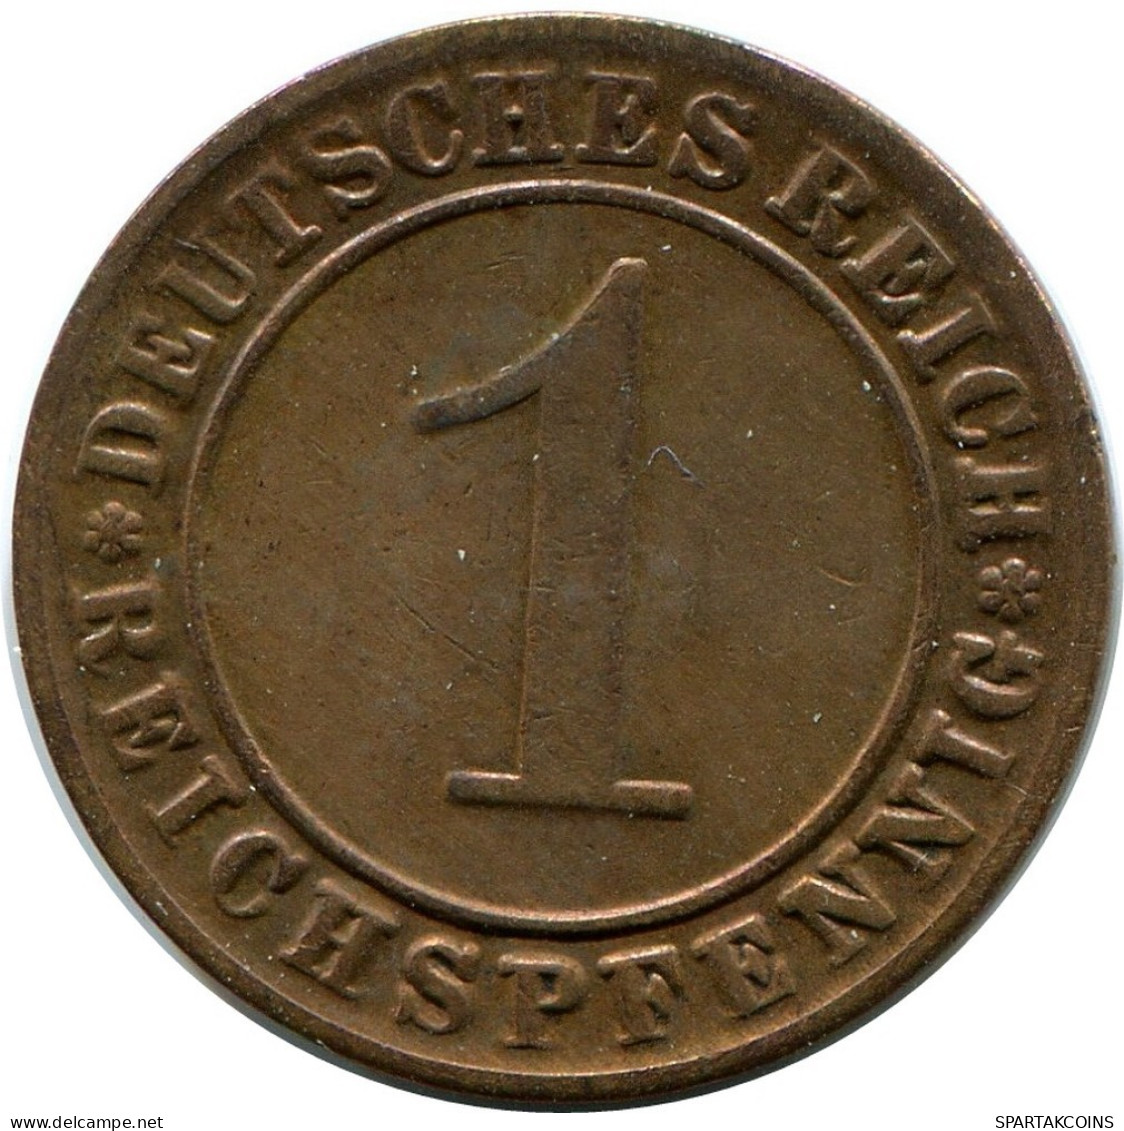 1 REICHSPFENNIG 1927 G GERMANY Coin #DB779.U.A - 1 Rentenpfennig & 1 Reichspfennig